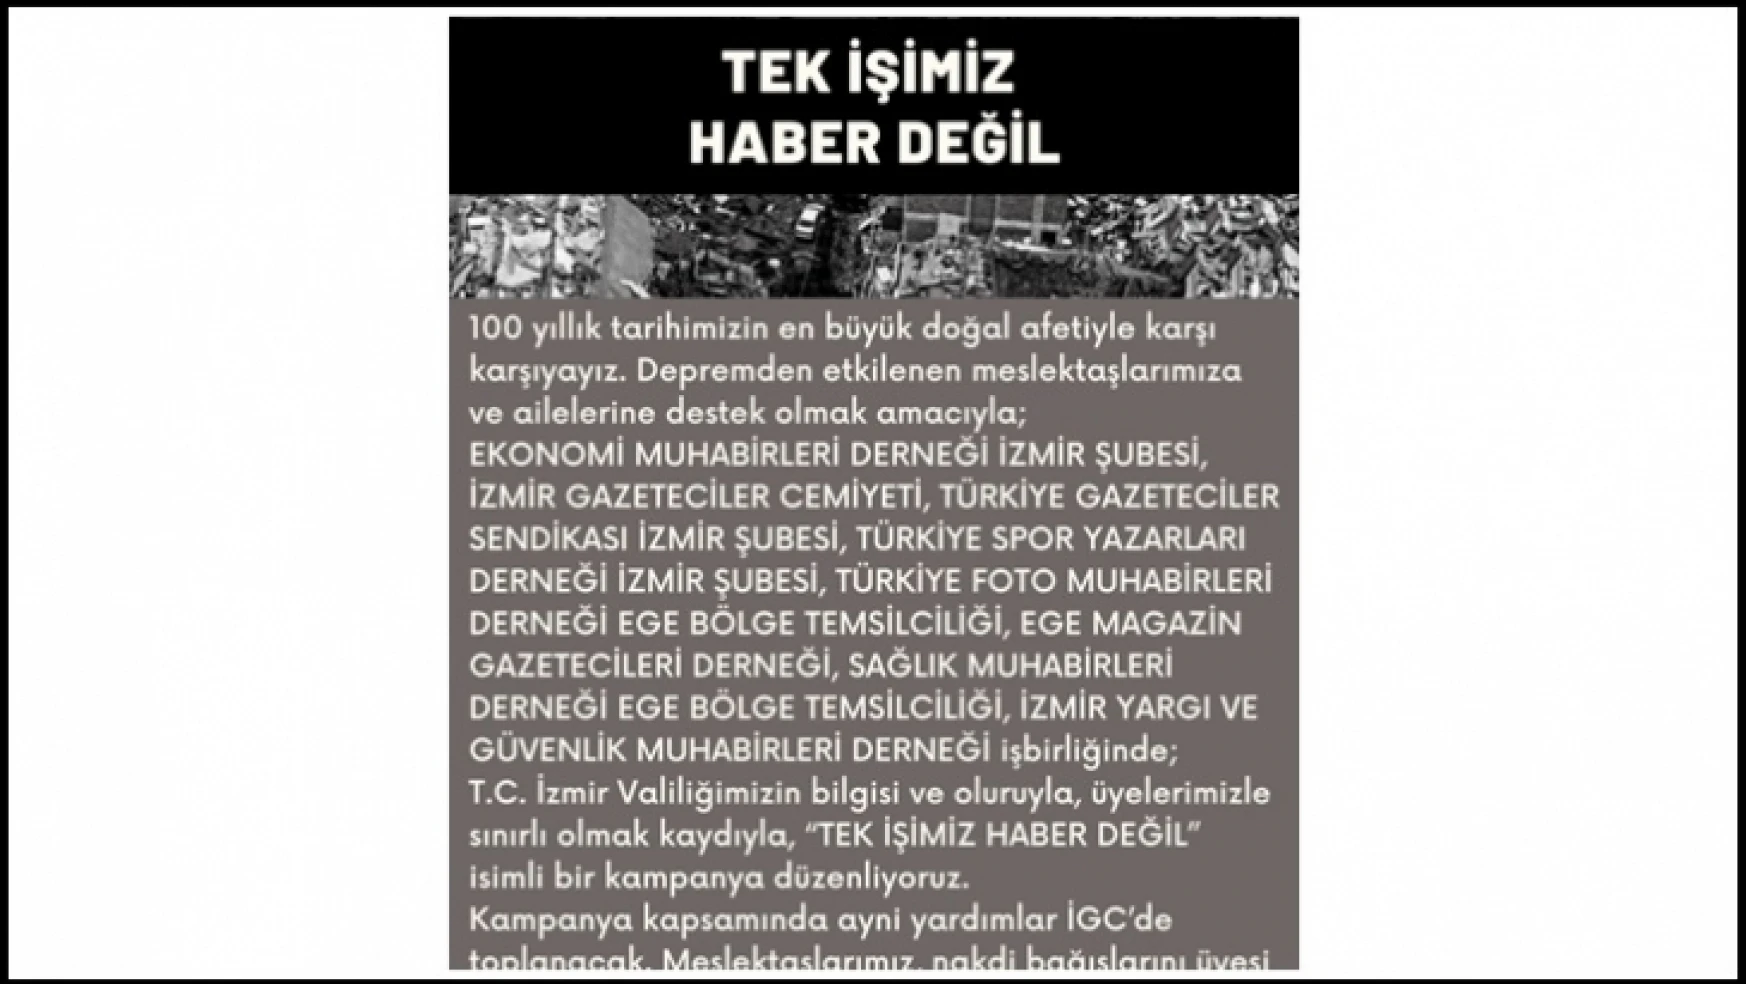 İzmirli Gazeteciler, 'TEK İŞİMİZ HABER DEĞİL' dedi